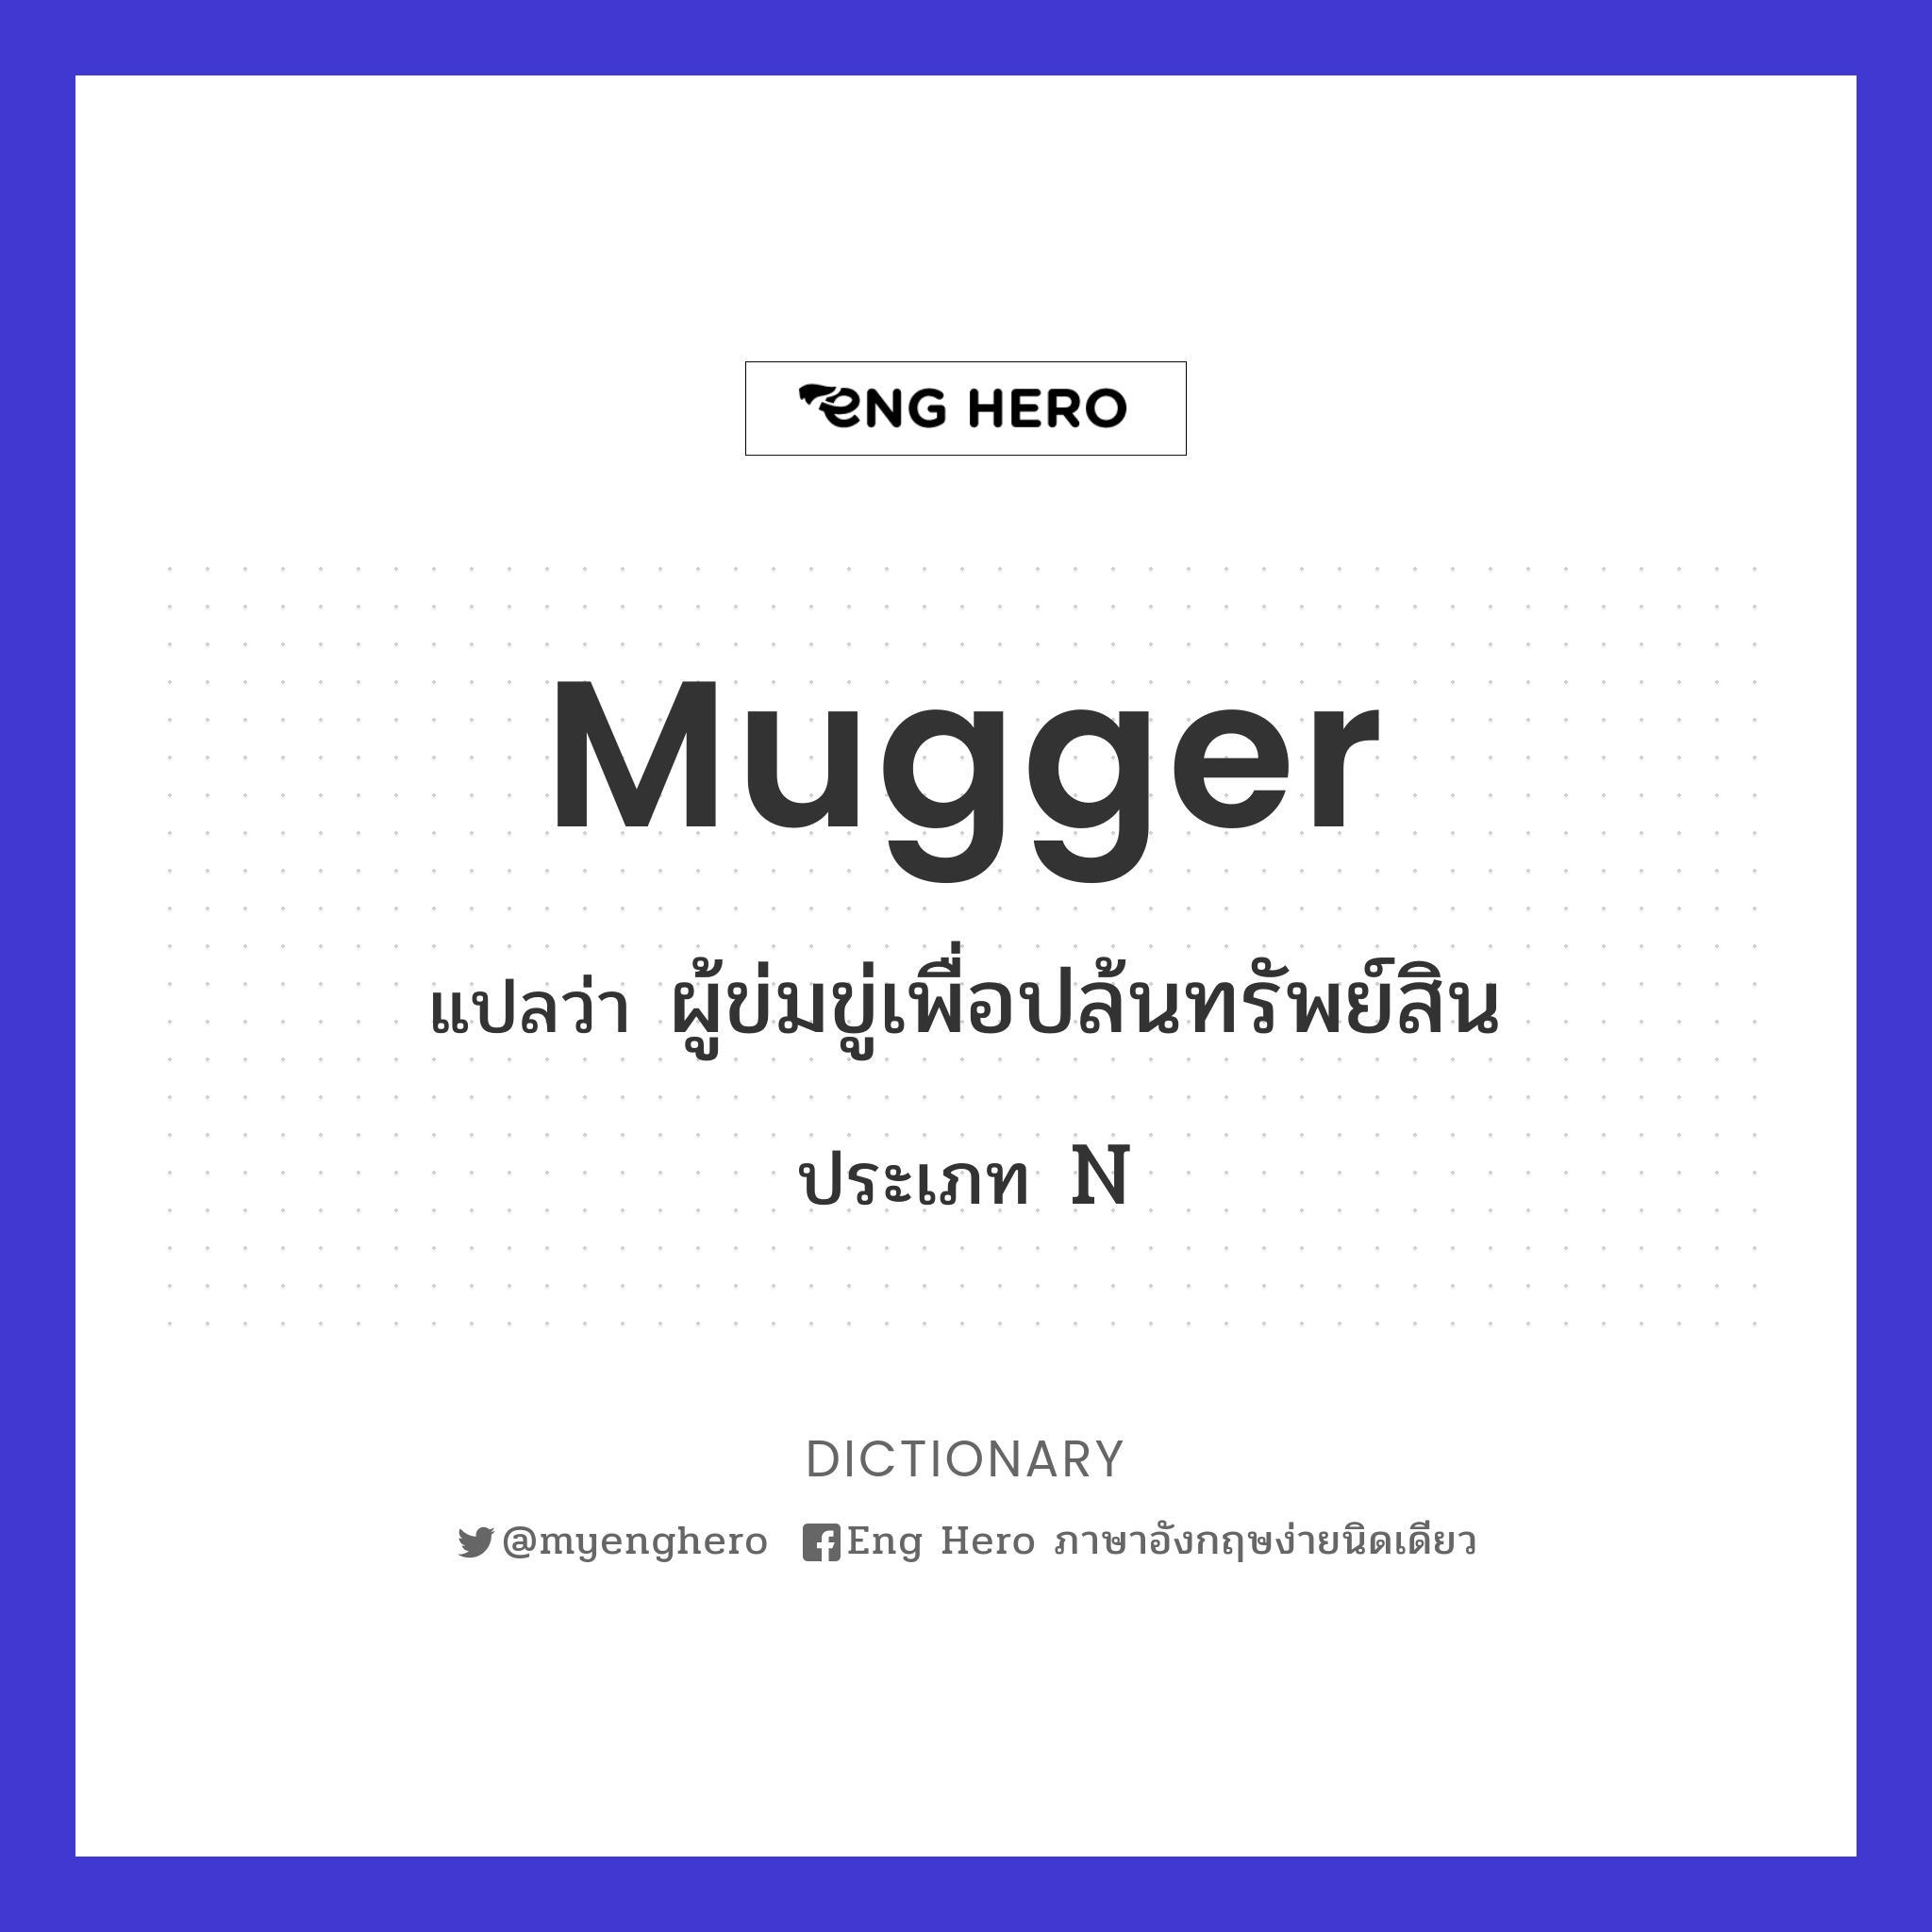 mugger